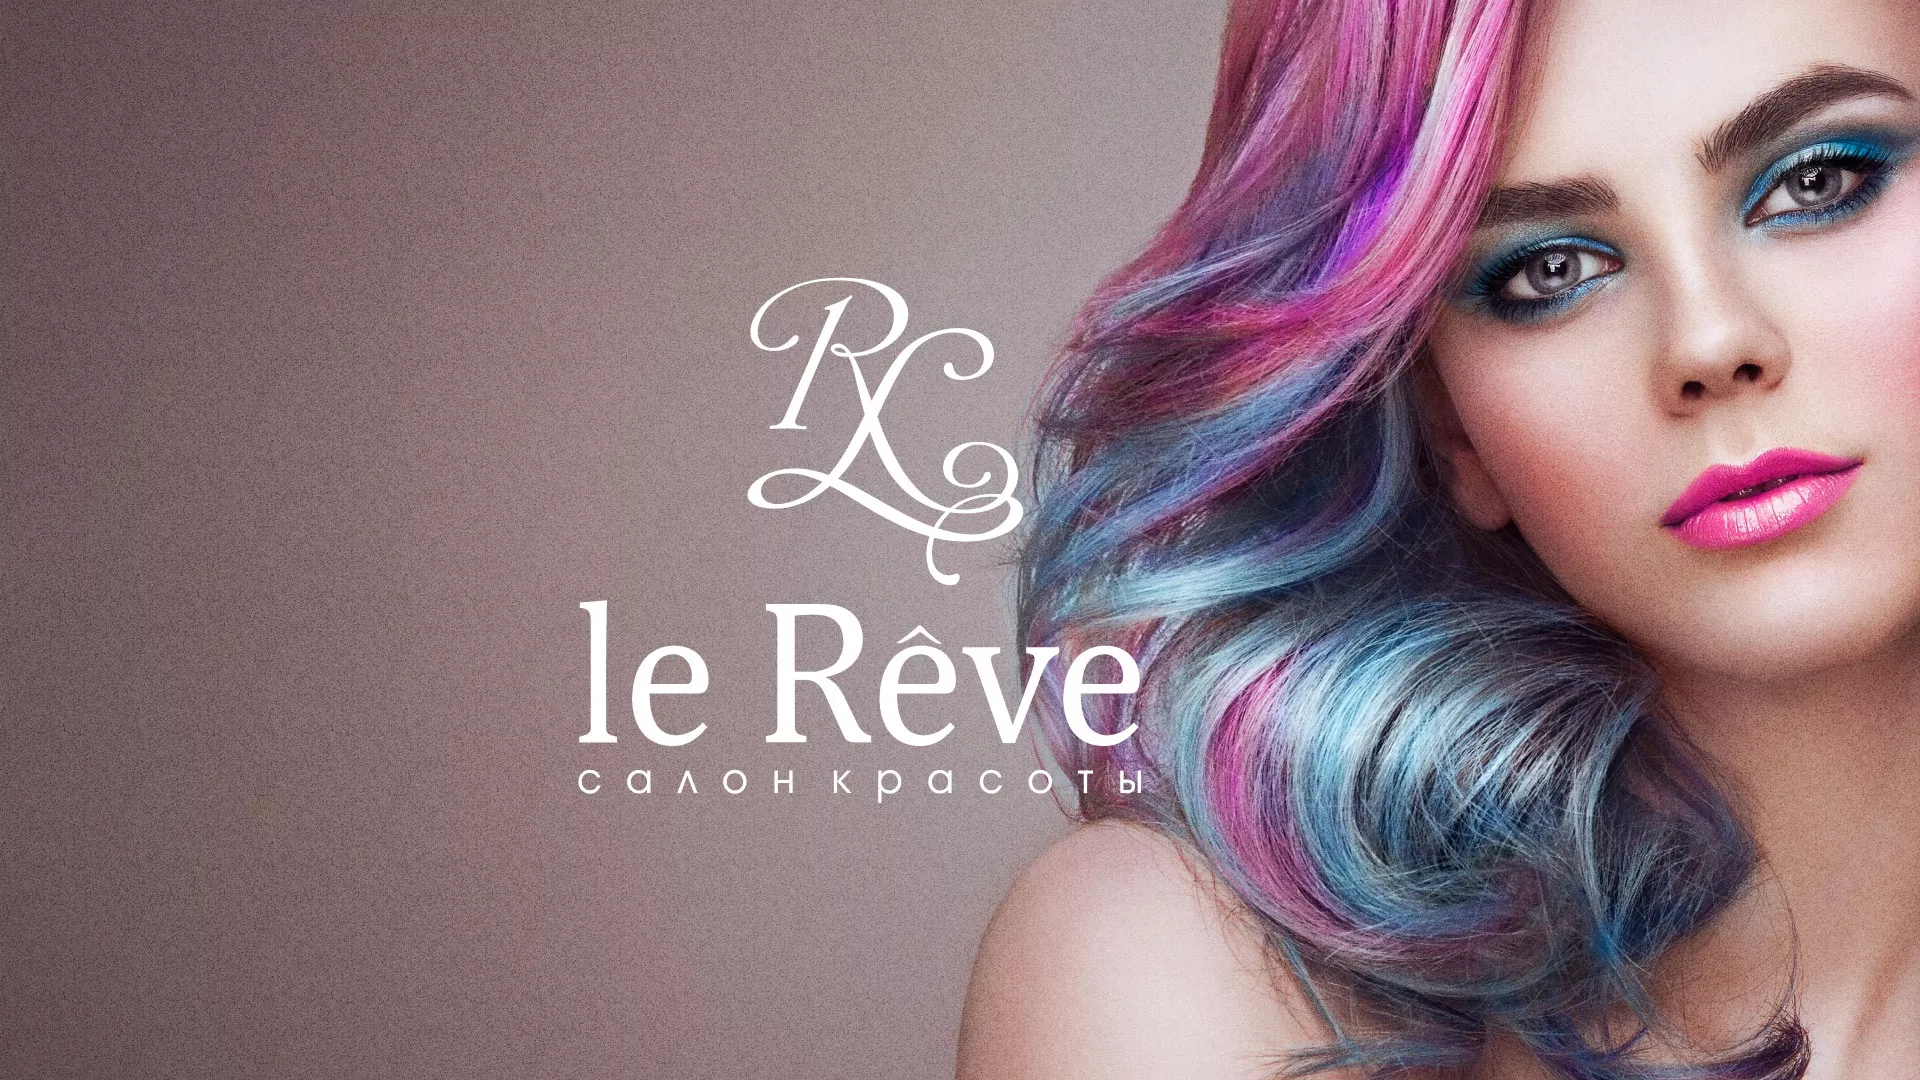 Создание сайта для салона красоты «Le Reve» в Павловске